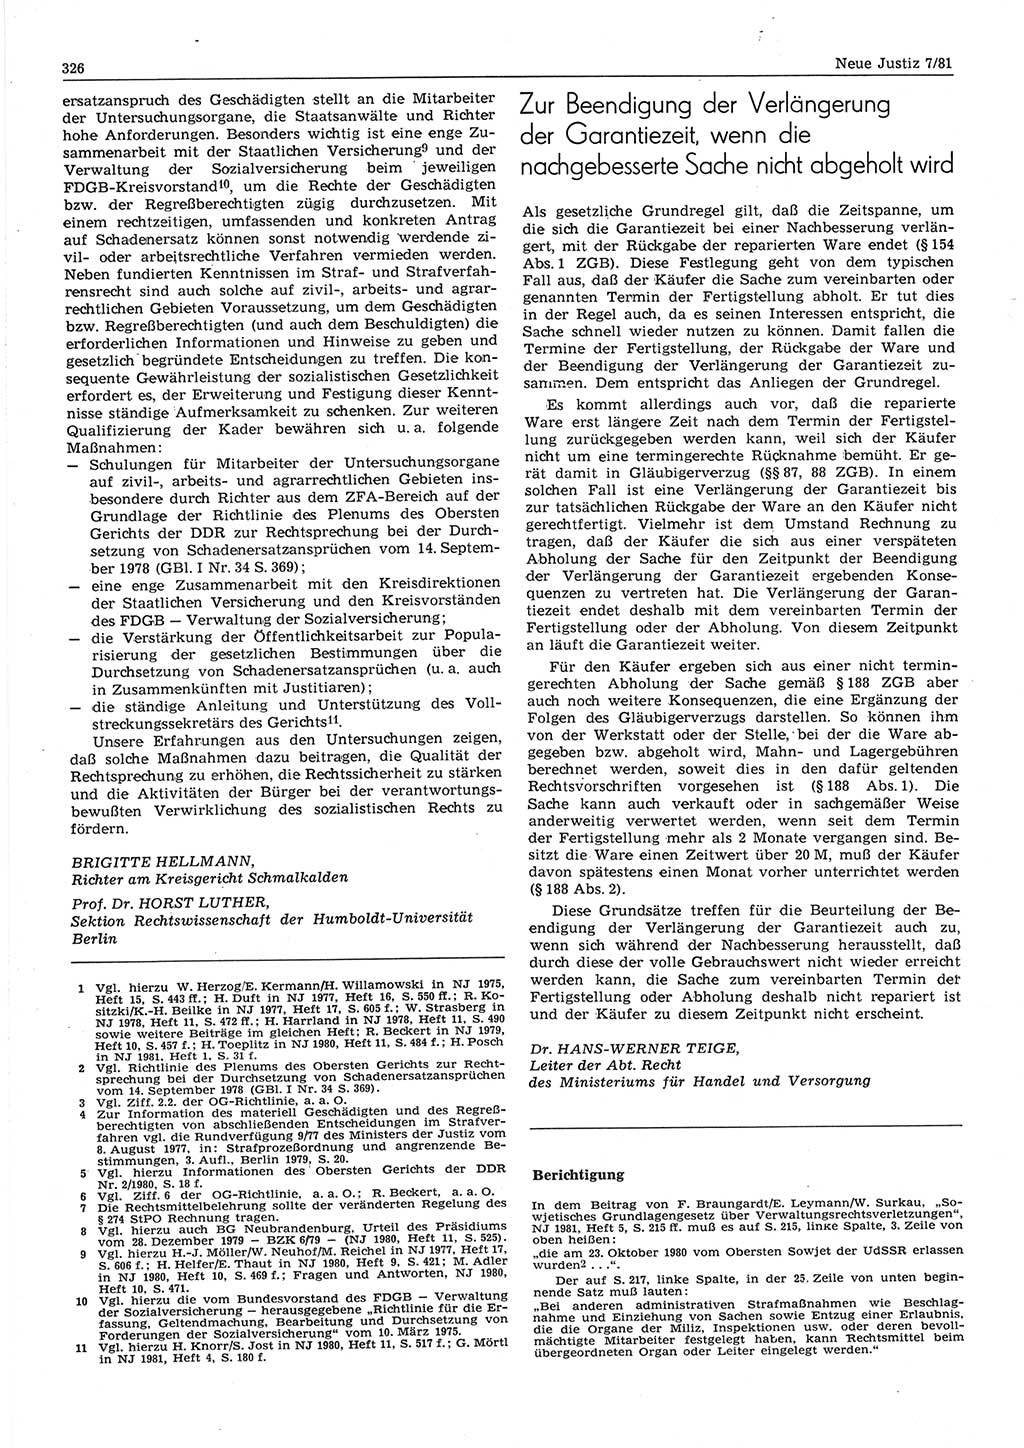 Neue Justiz (NJ), Zeitschrift für sozialistisches Recht und Gesetzlichkeit [Deutsche Demokratische Republik (DDR)], 35. Jahrgang 1981, Seite 326 (NJ DDR 1981, S. 326)